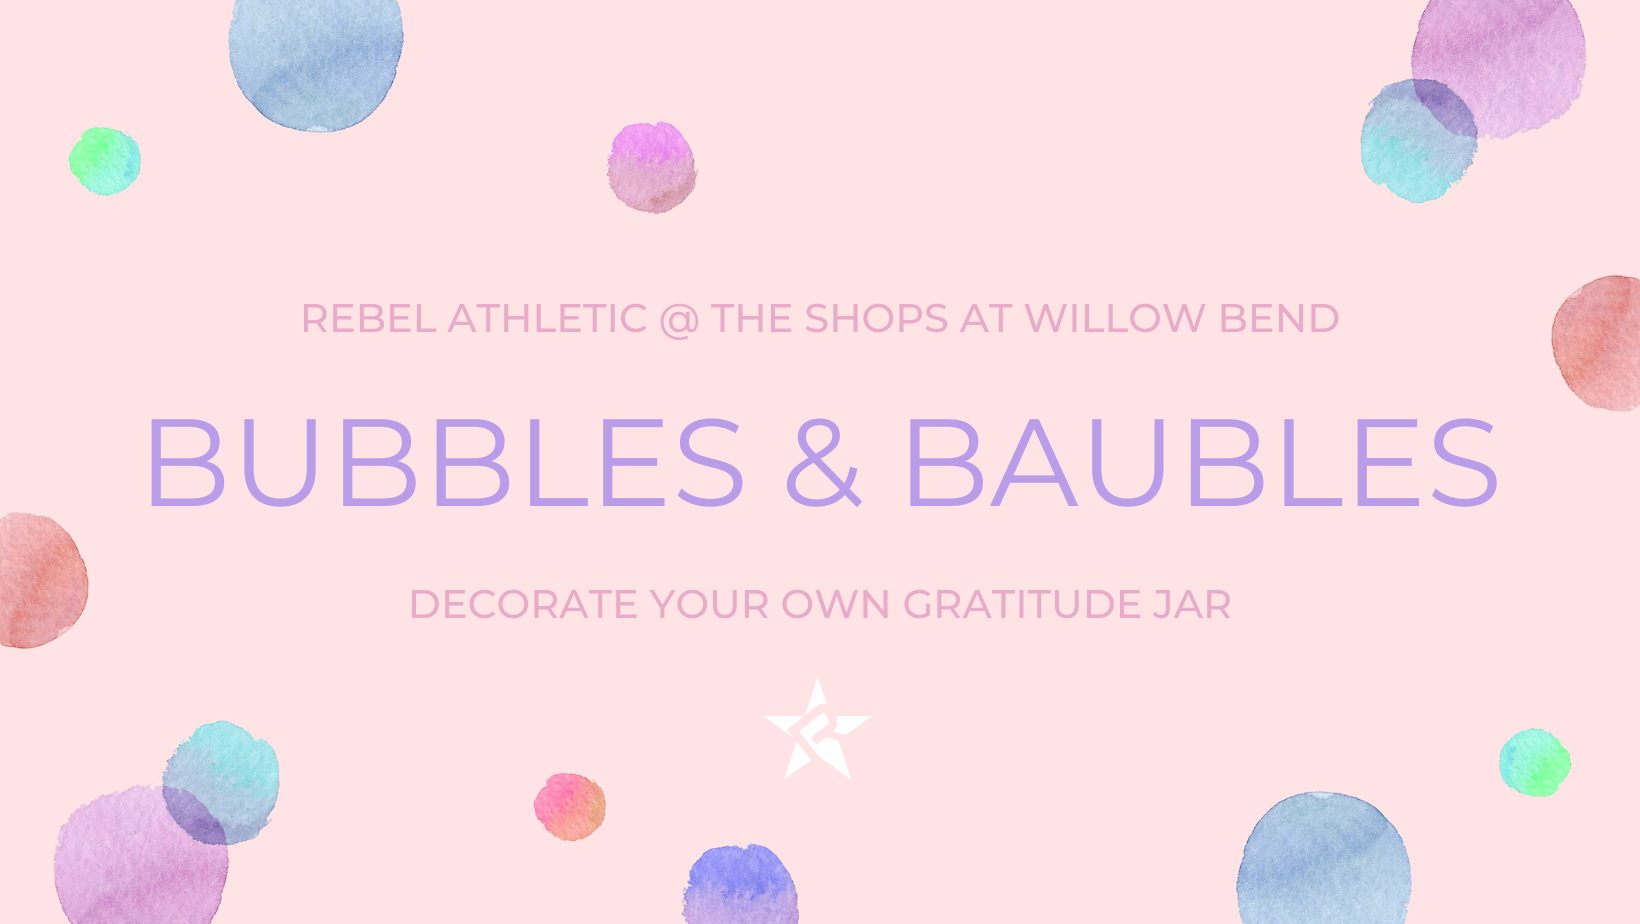 Bubbles & Baubles Gratitude Jar